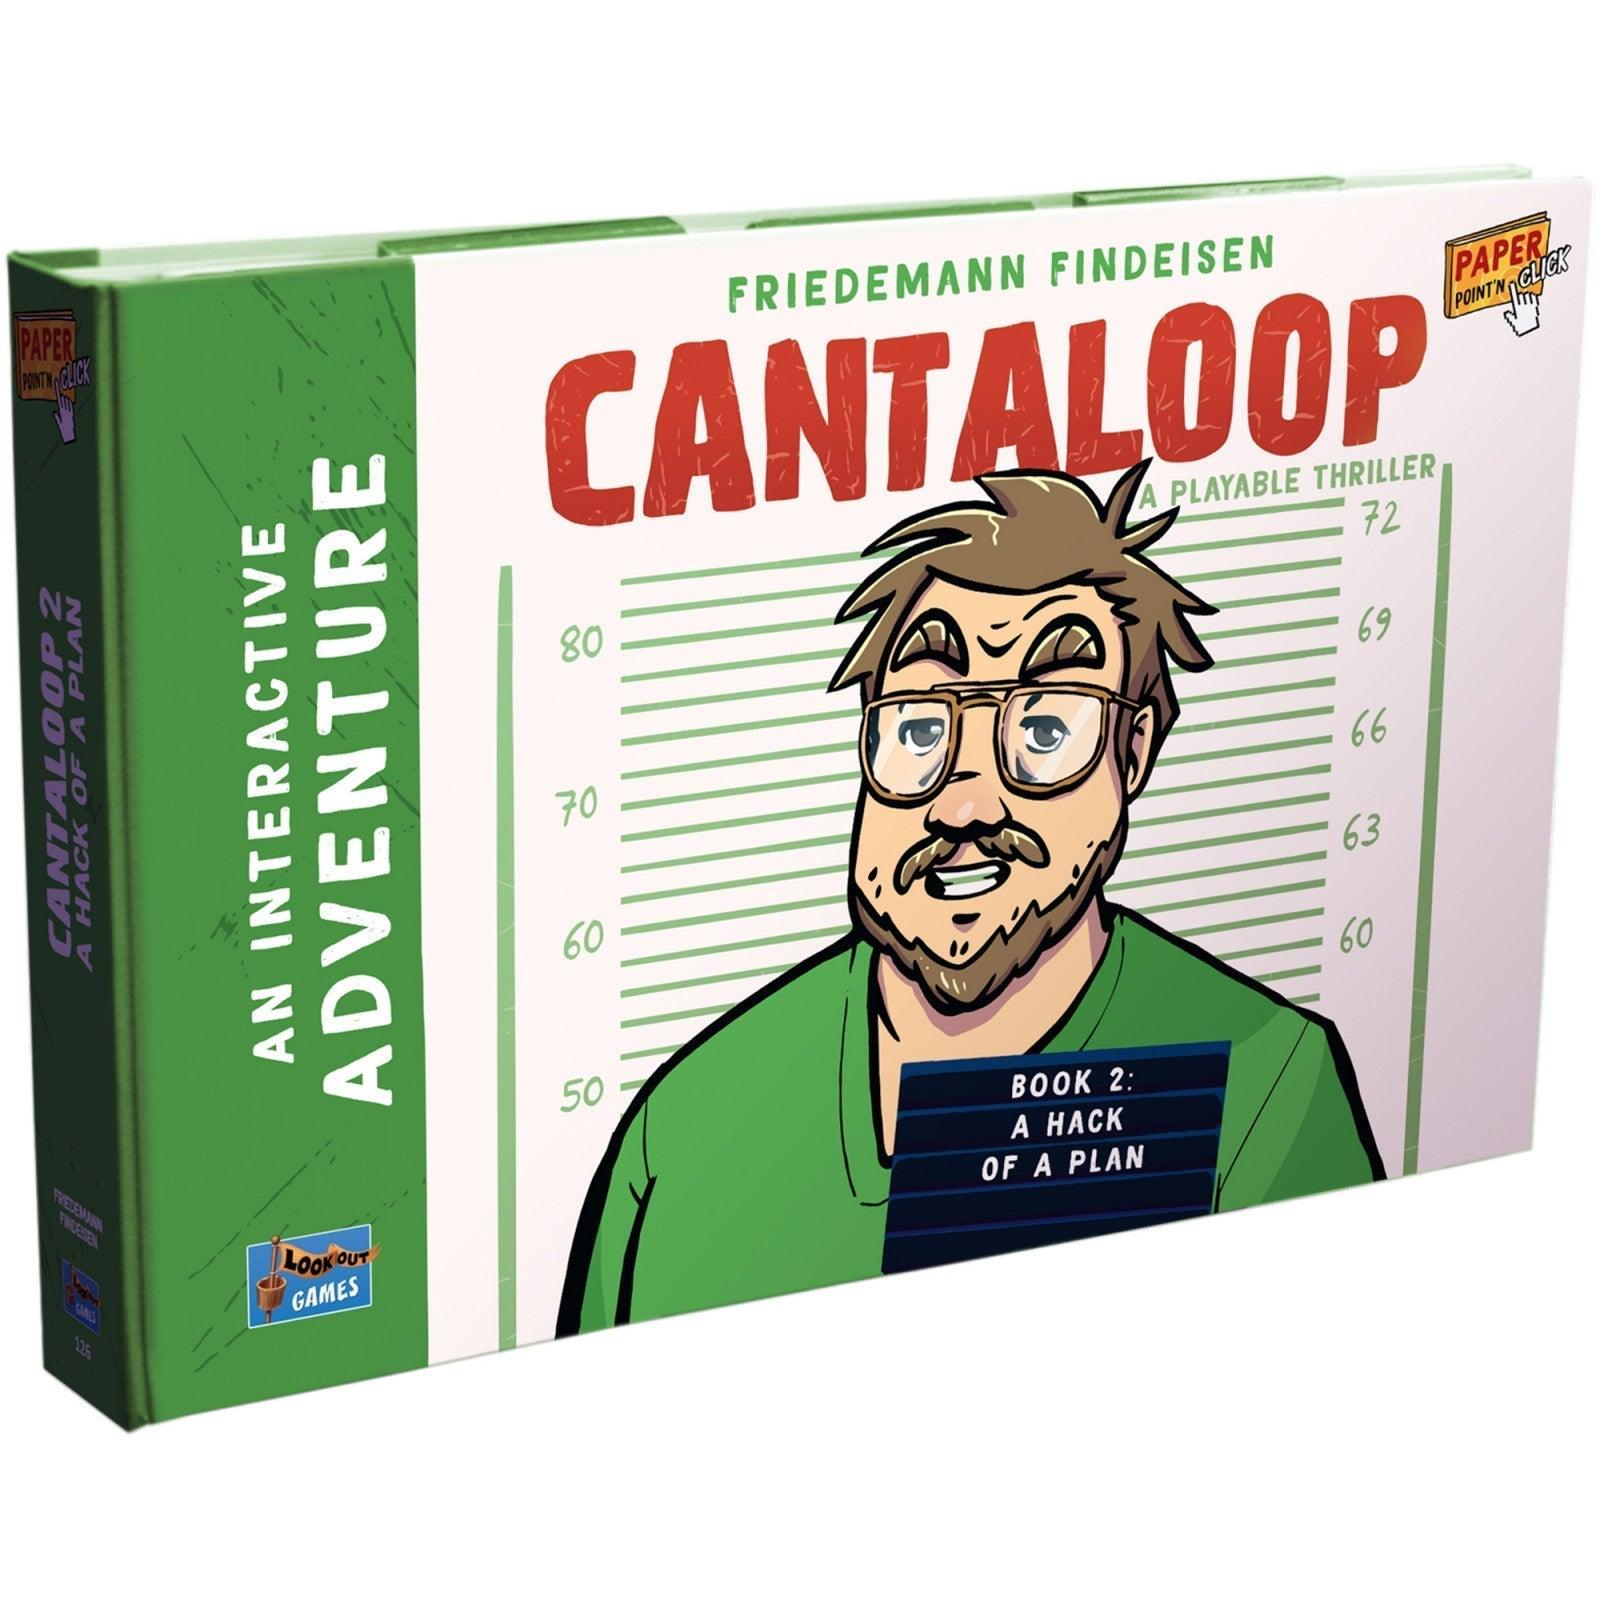 Cantaloop Book 2 - A Hack of a Plan Lookout Games Titan Pop Culture